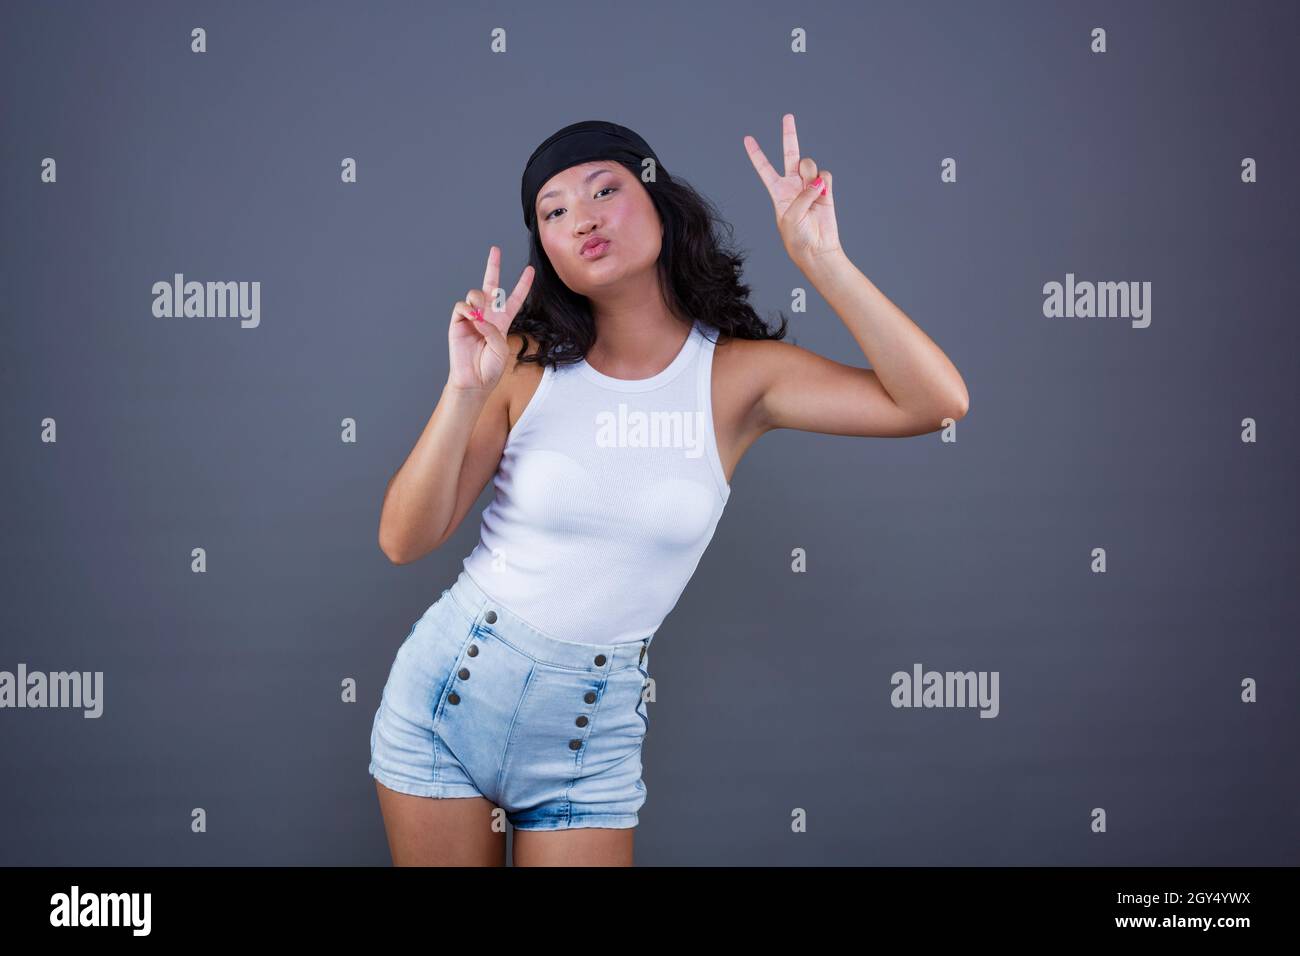 jeune fille chinoise avec bandana et short, faisant le signe de la paix ou de la victoire, dans une posture et une expression drôles. Banque D'Images